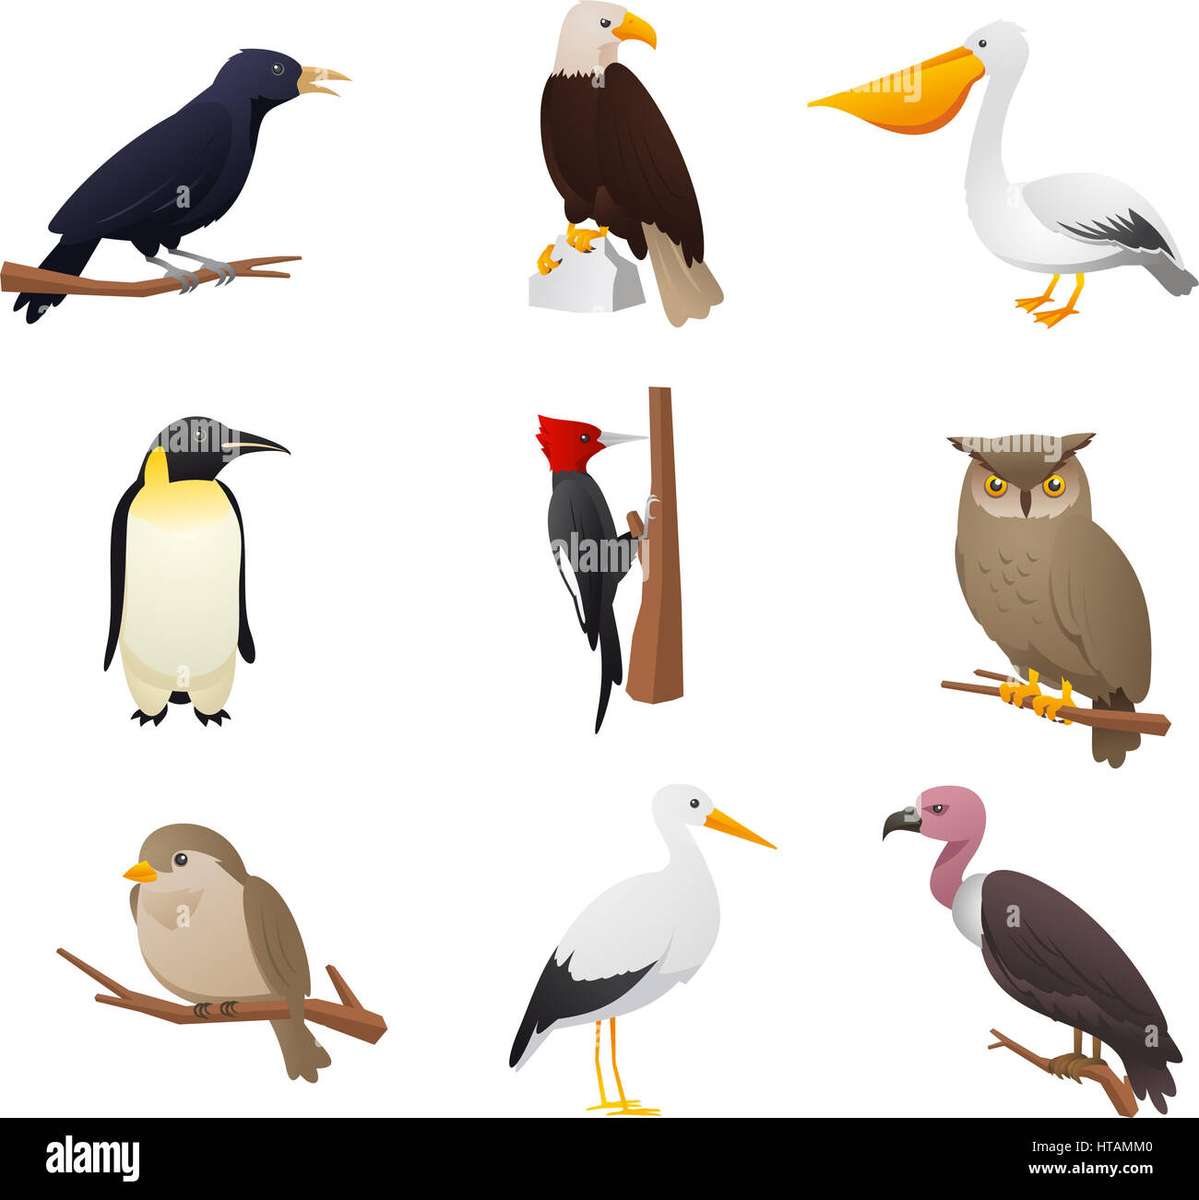 Układanka ptaków puzzle online